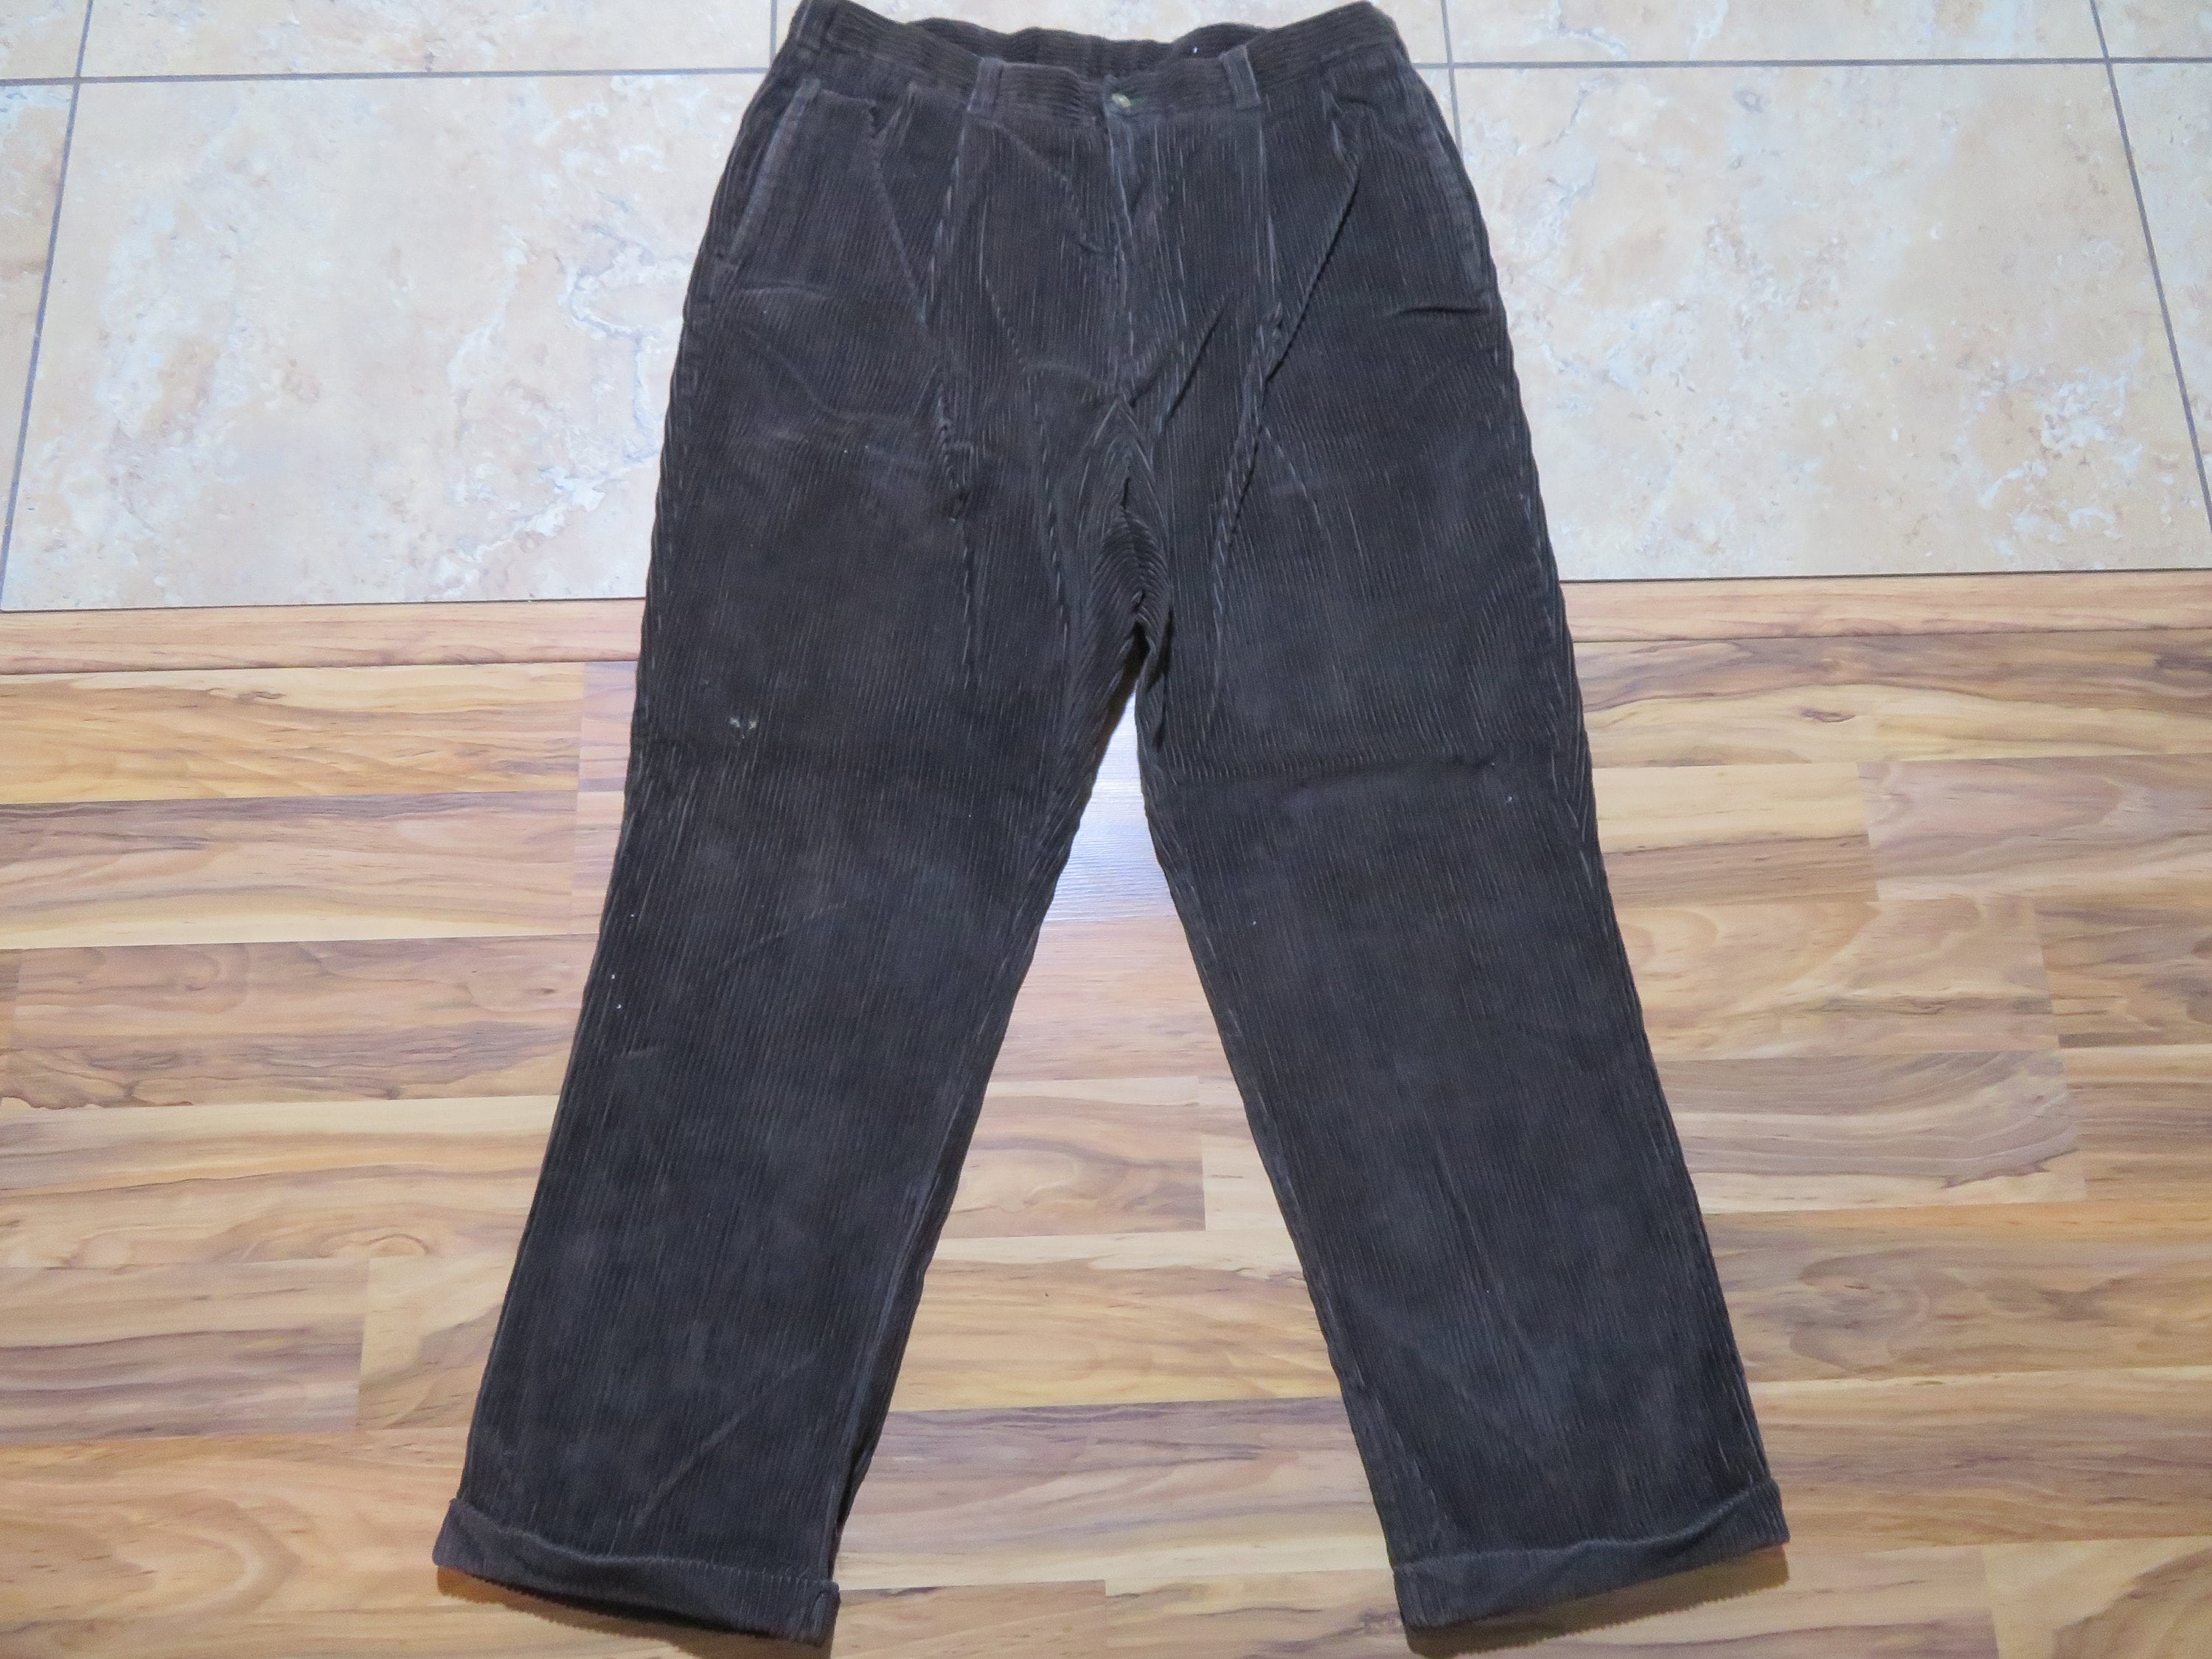 Black Corduroy Pants, Women Large Size Pants, Winter Warm Corduroy